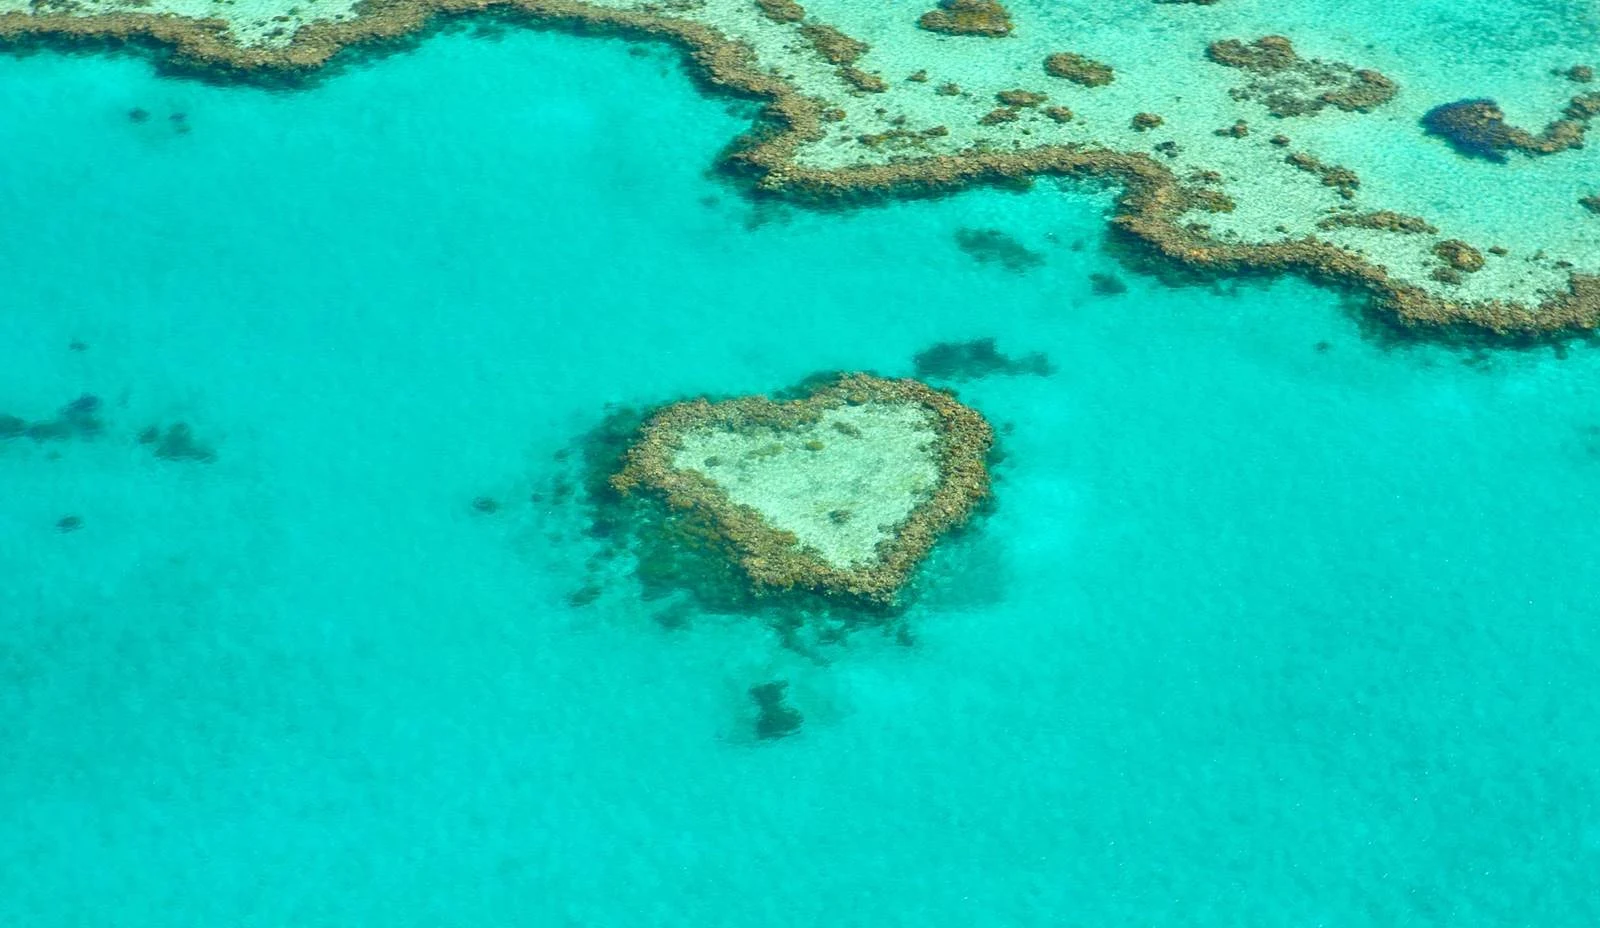 聖靈群島-景點-行程-推薦-直升機-小飛機-水上飛機-攻略-大堡礁-心型礁-遊記-自由行-旅遊-Whitsundays-Plane-Helicopter-Sea-Heart-Reef-Travel